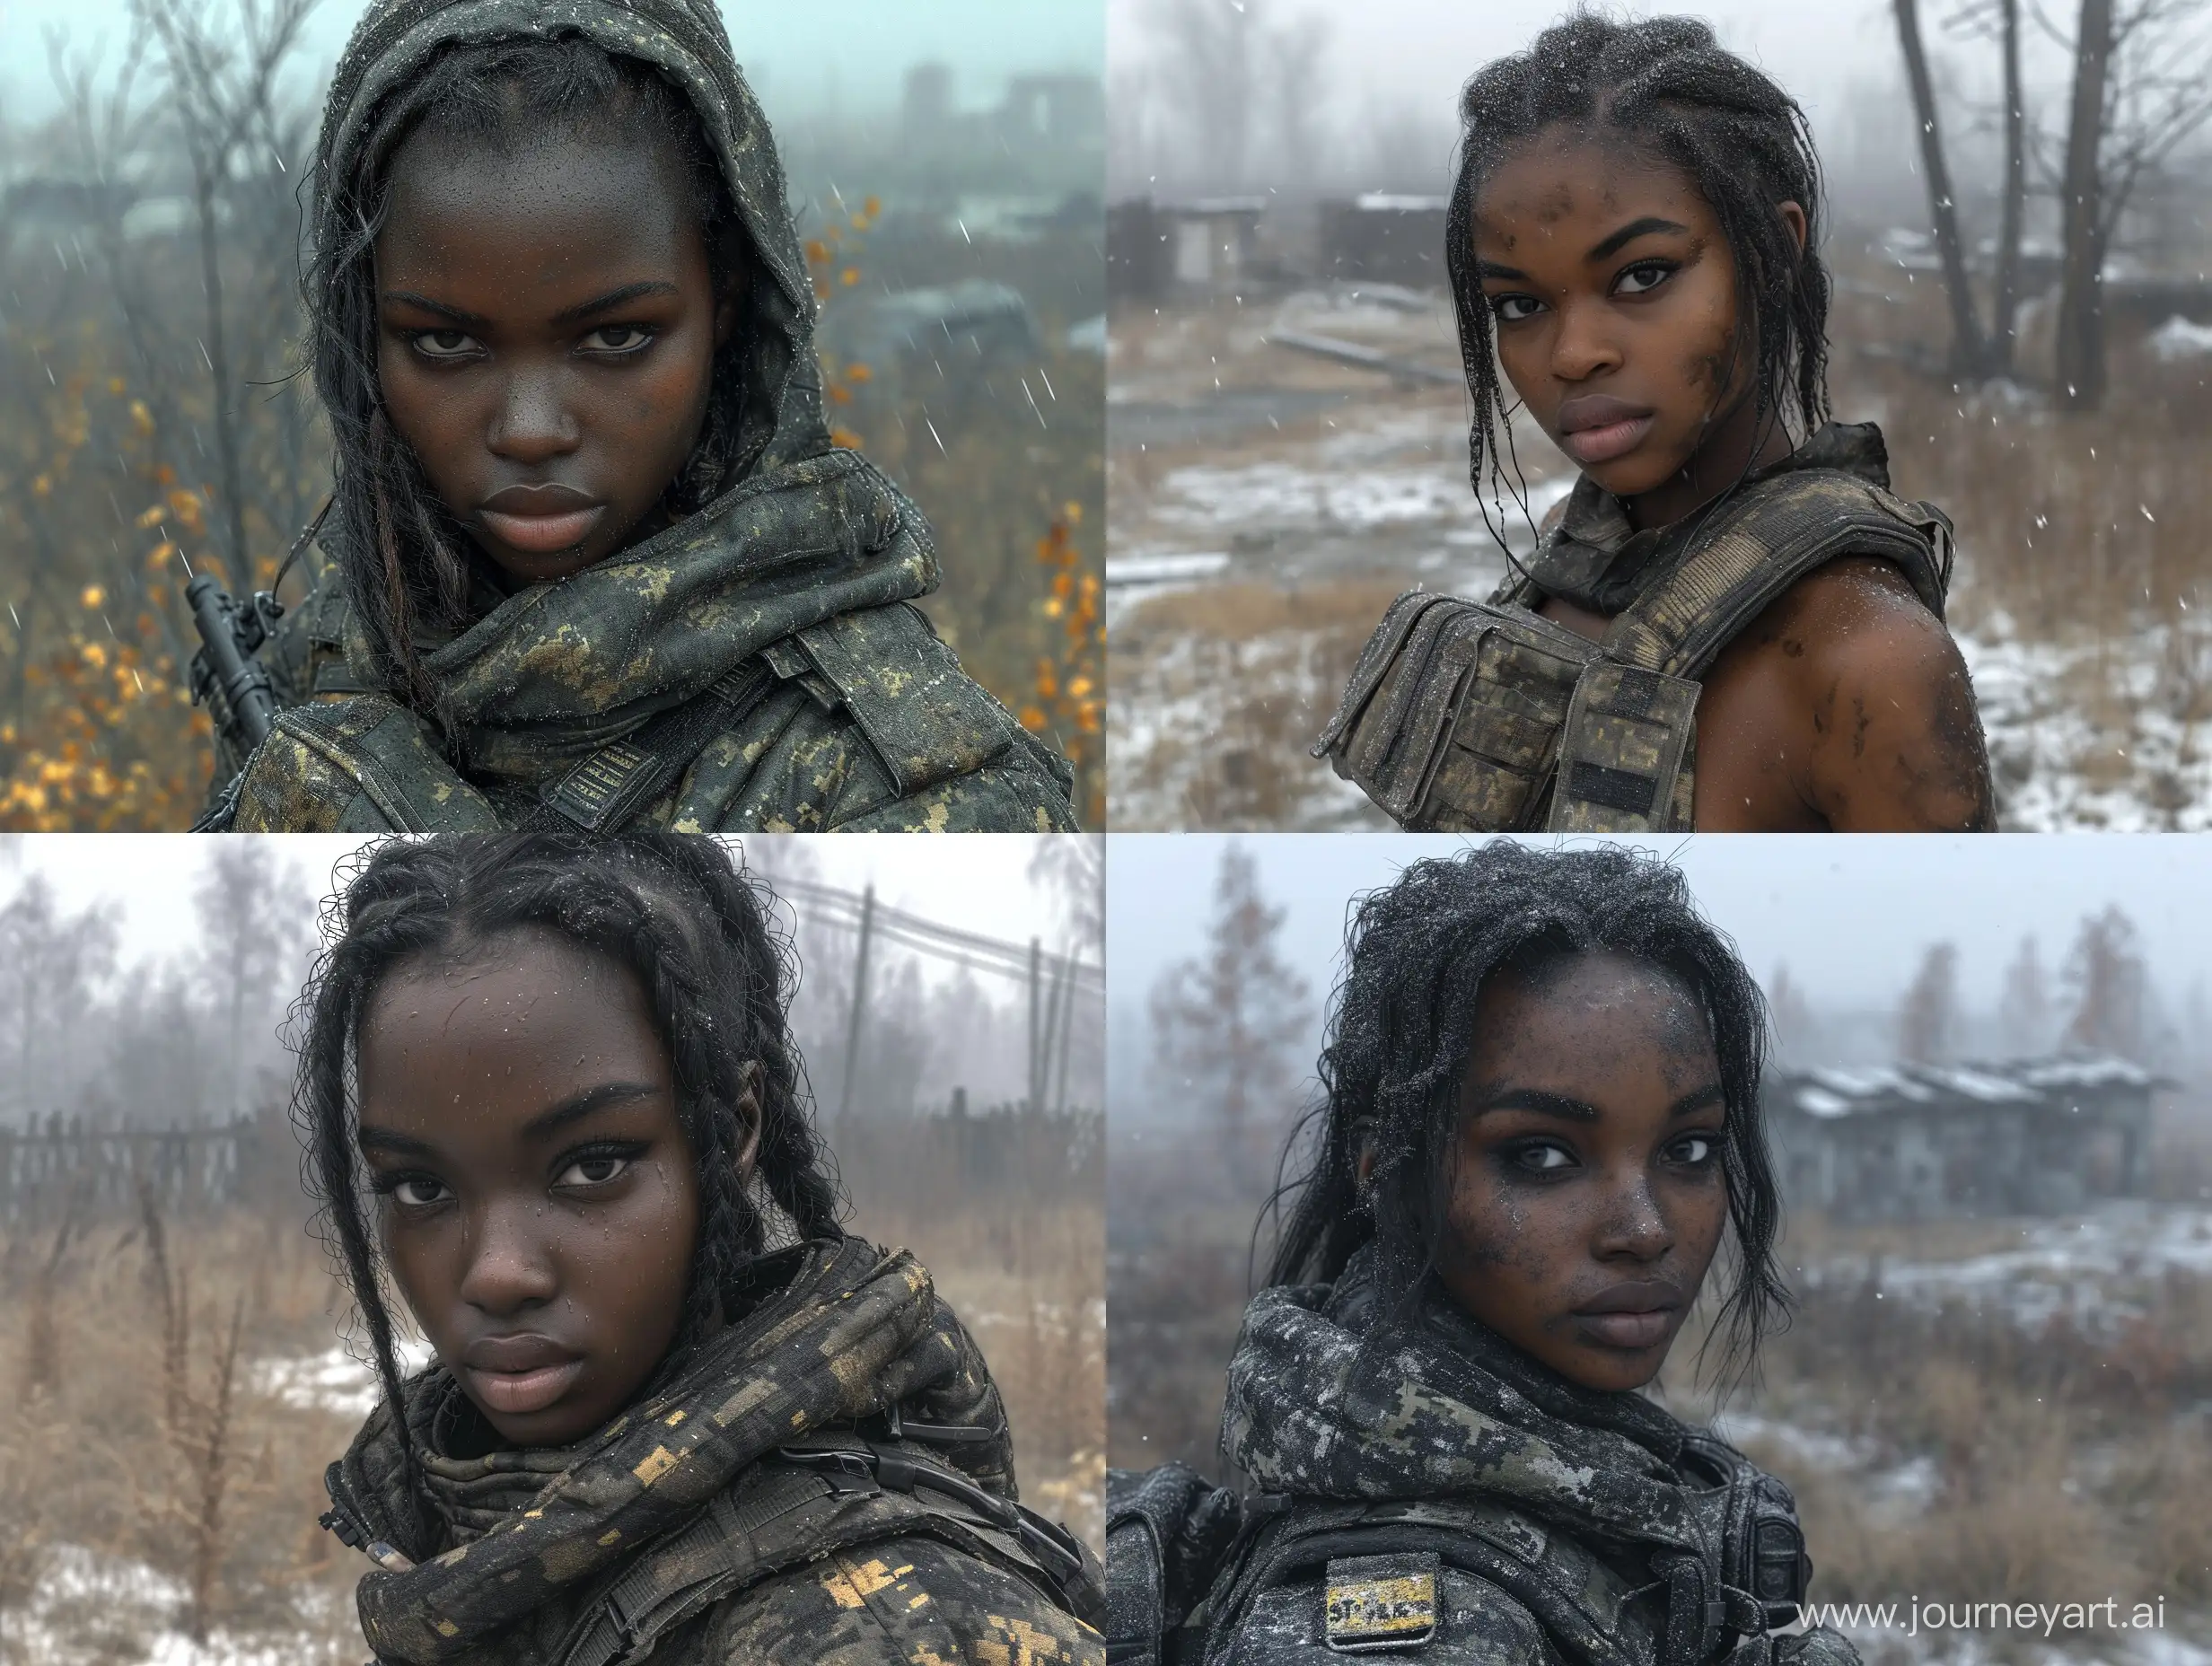 Stylish-Ebony-Skin-Female-Mercenary-in-STALKER-Black-Tactical-Gear